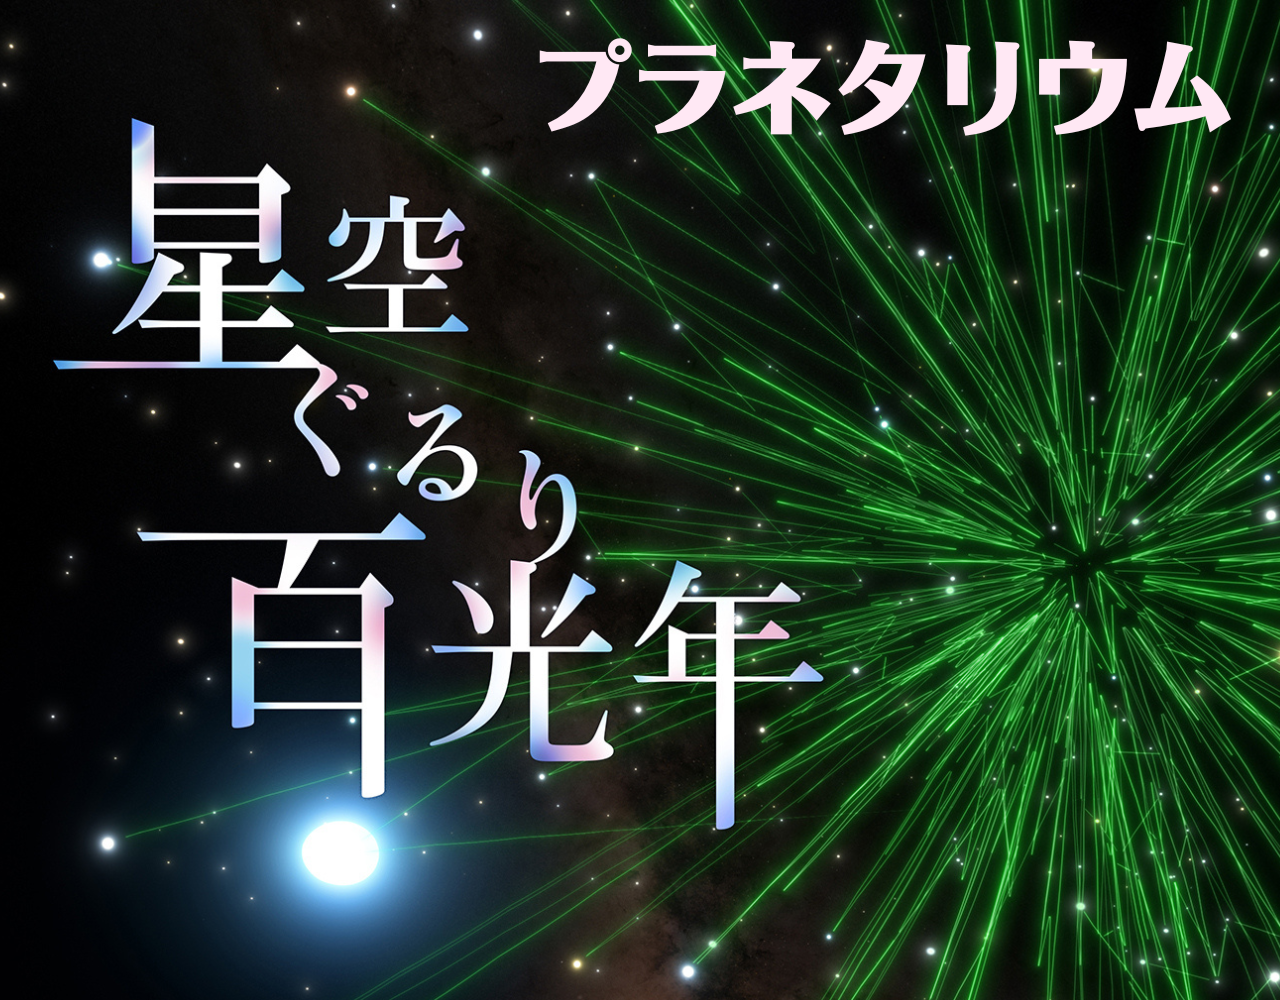 大阪市立科学館プラネタリウム「星空ぐるり百光年」